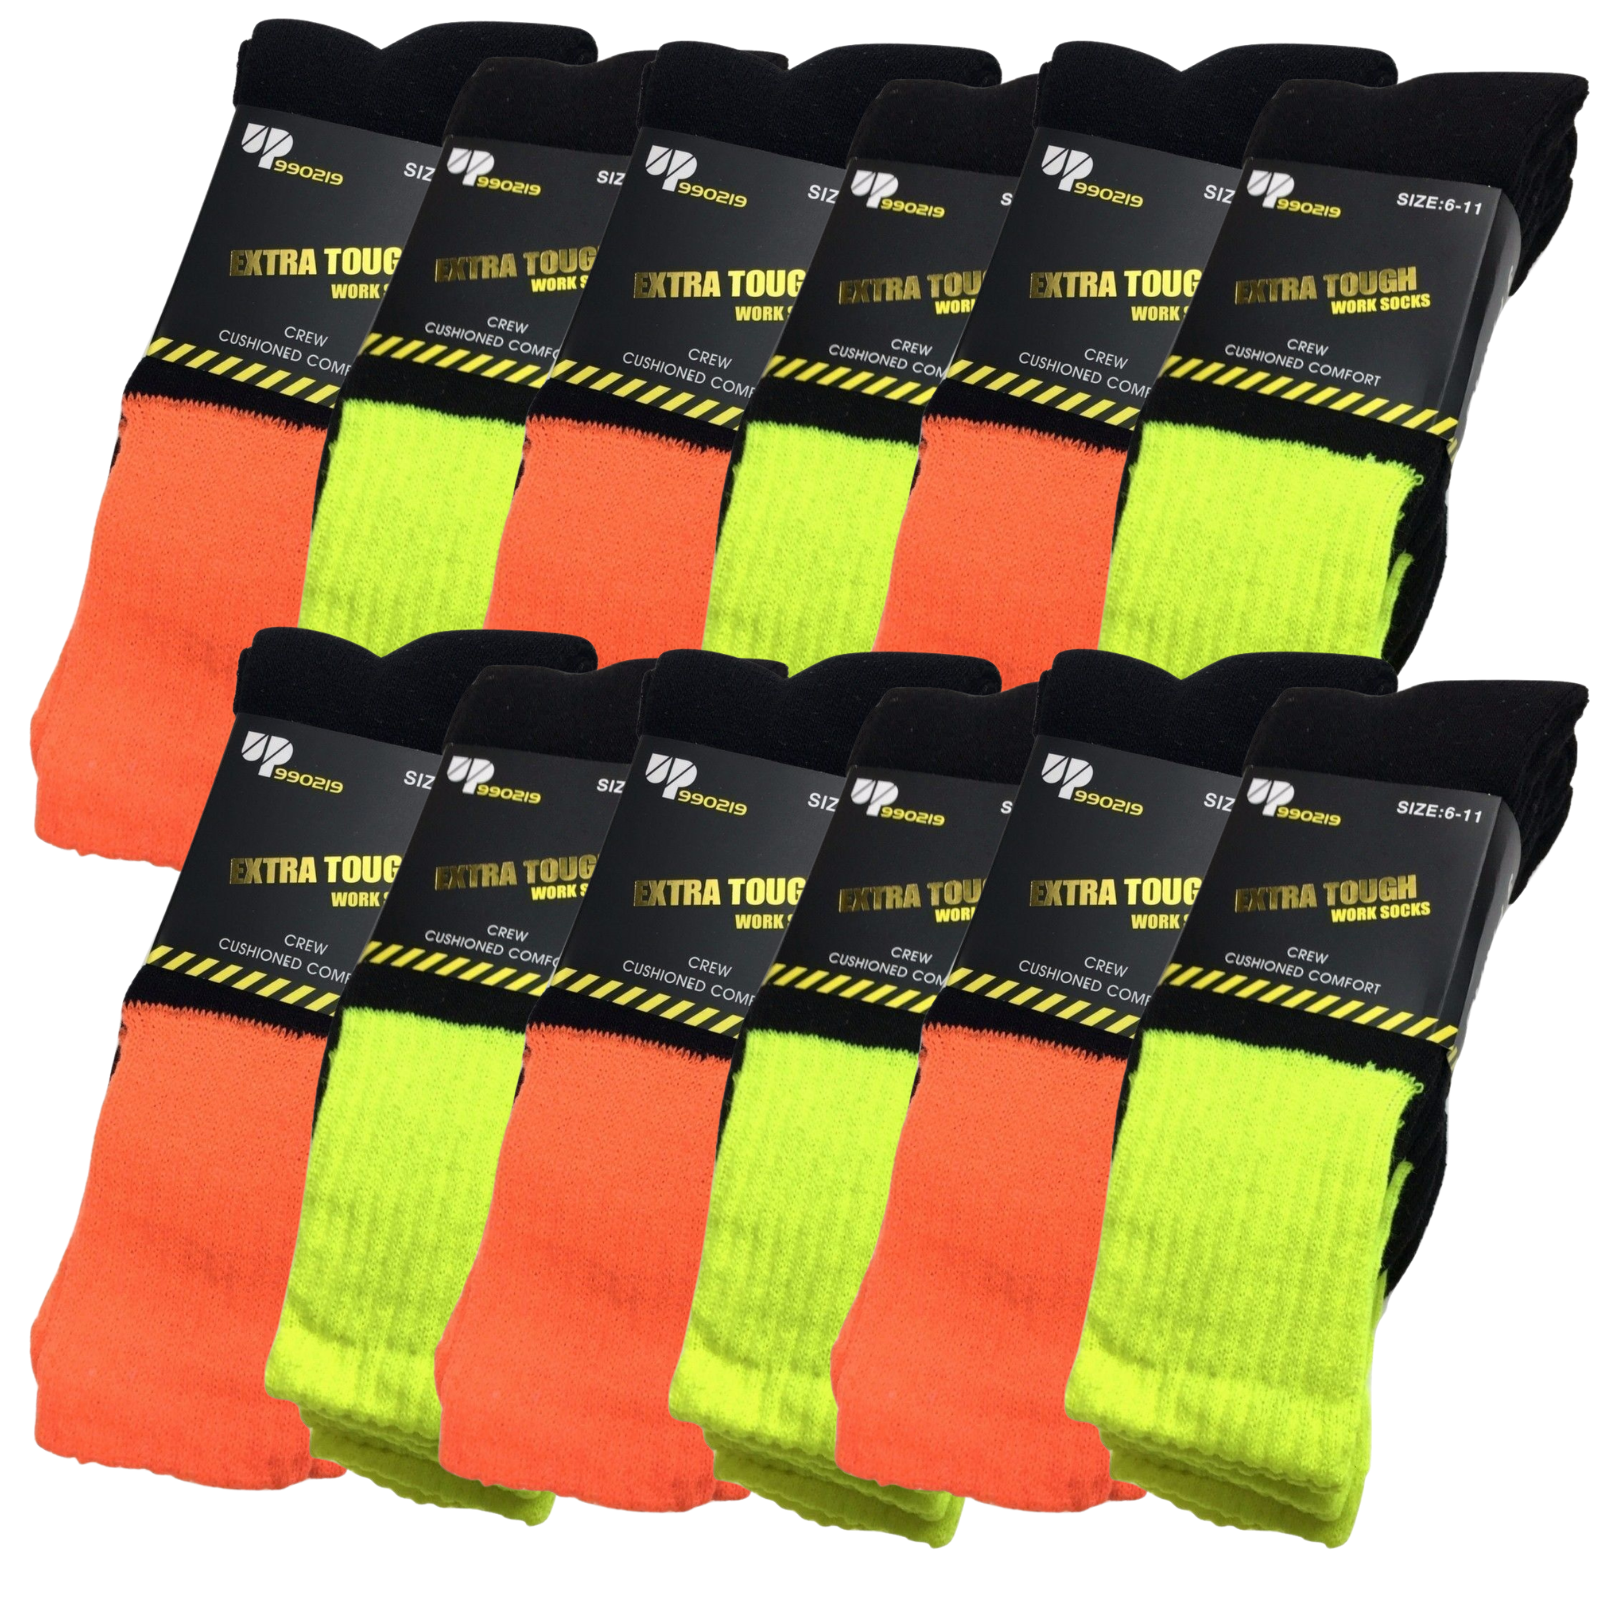 Black Pack of 20 Men’s Performance Basic Crew Socks 6-11 Size 